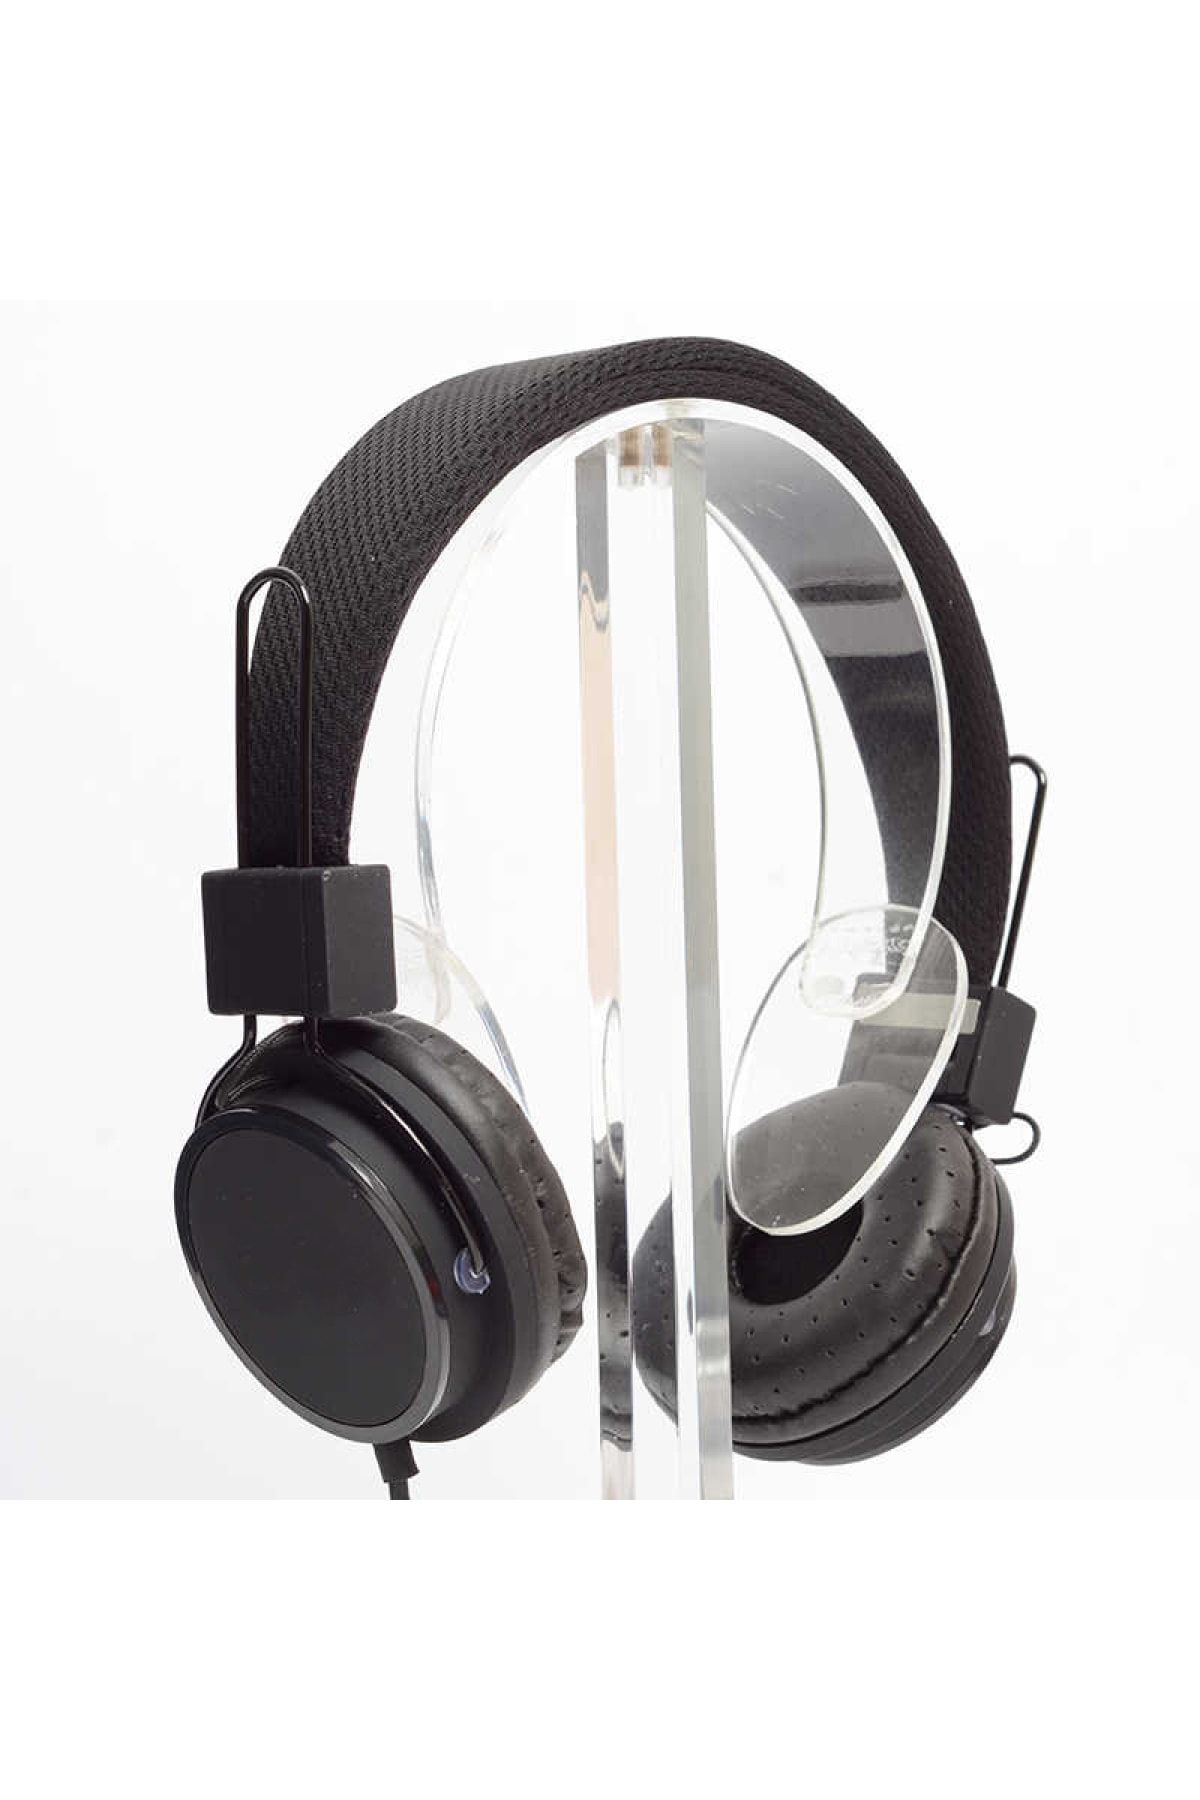 Genel Markalar Wowlett Kablolu Mikrofonlu Kulaküstü Kulaklık Kafa Bantlı 3,5 Mm Superbass